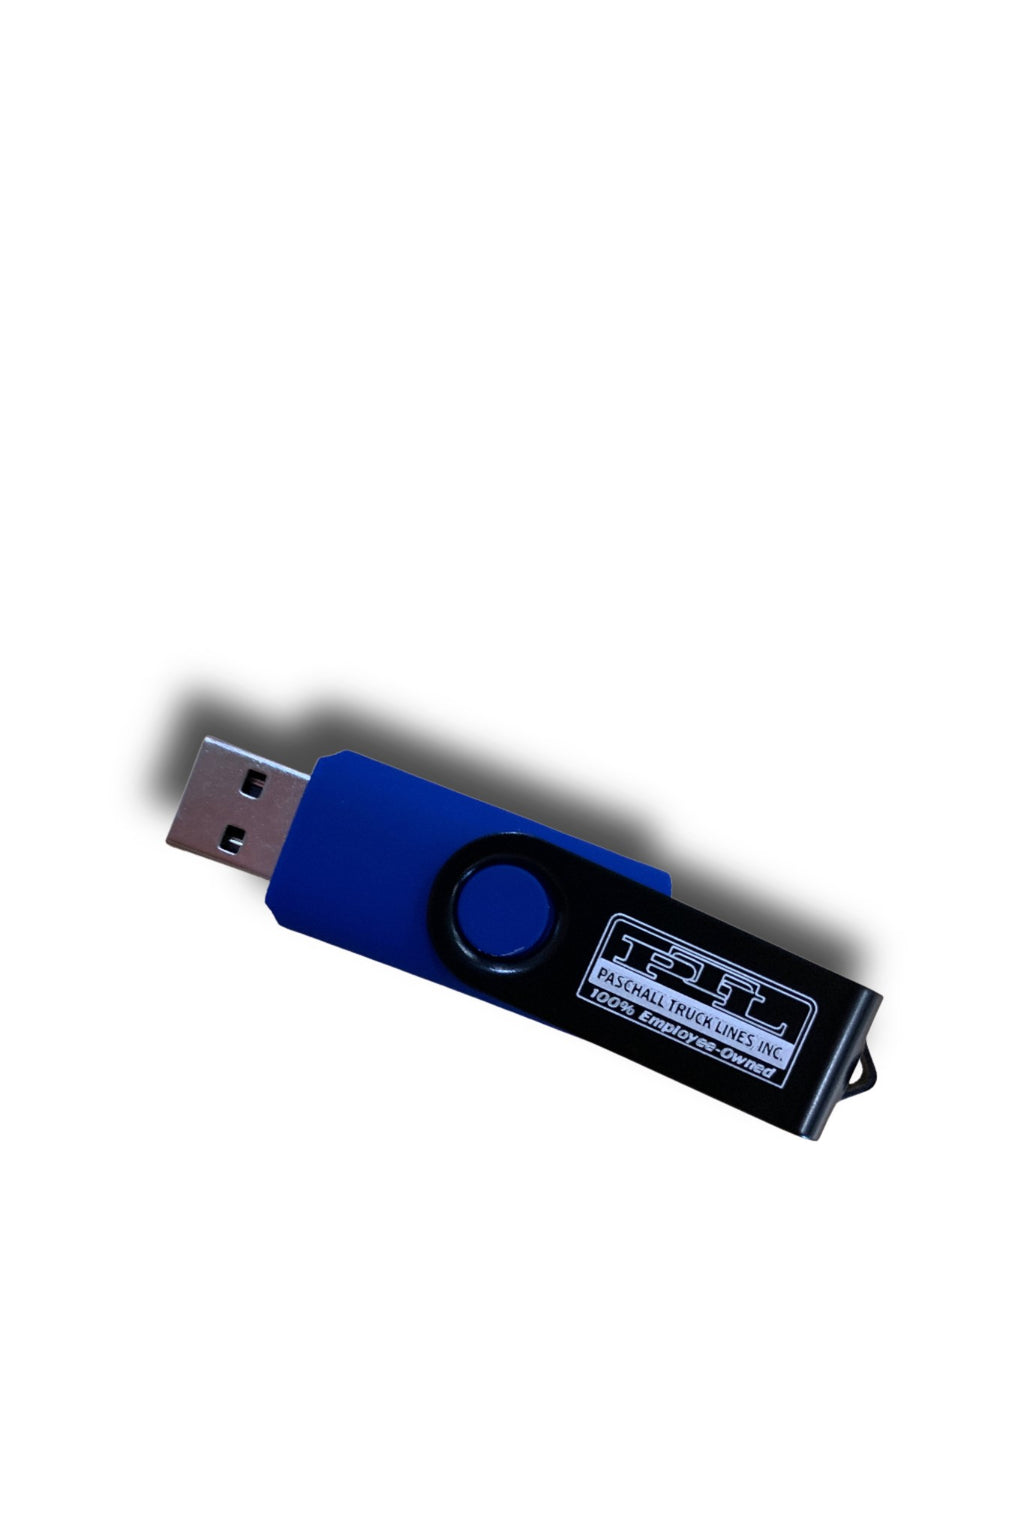 PTL USB drive